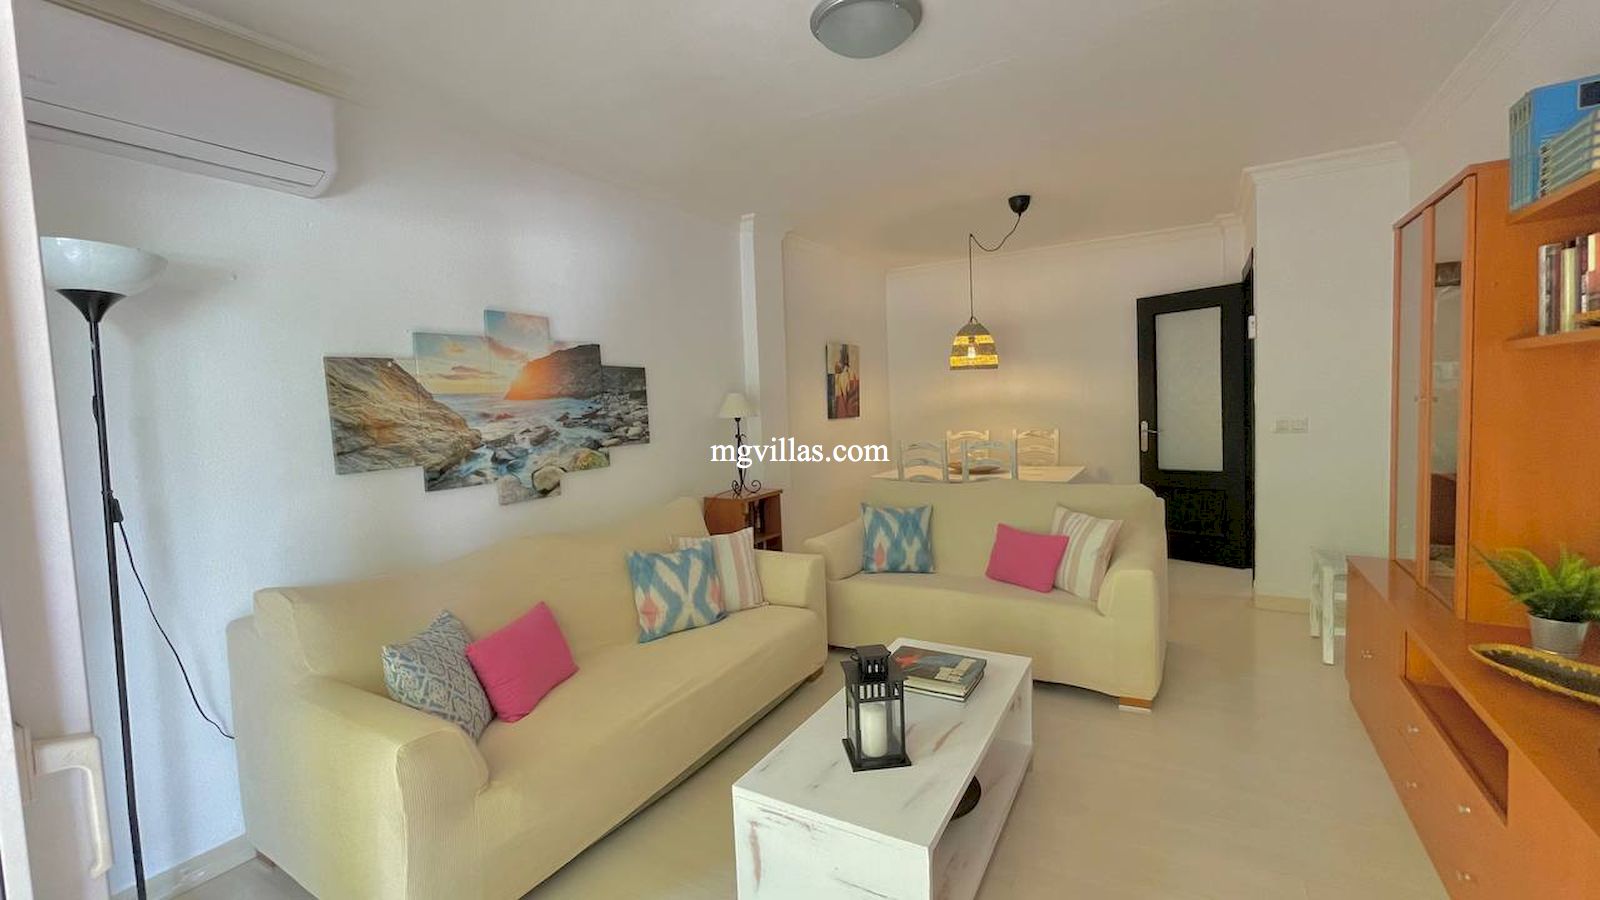 Appartement te huur Tijdelijk- El Arenal- Javea- Alicante